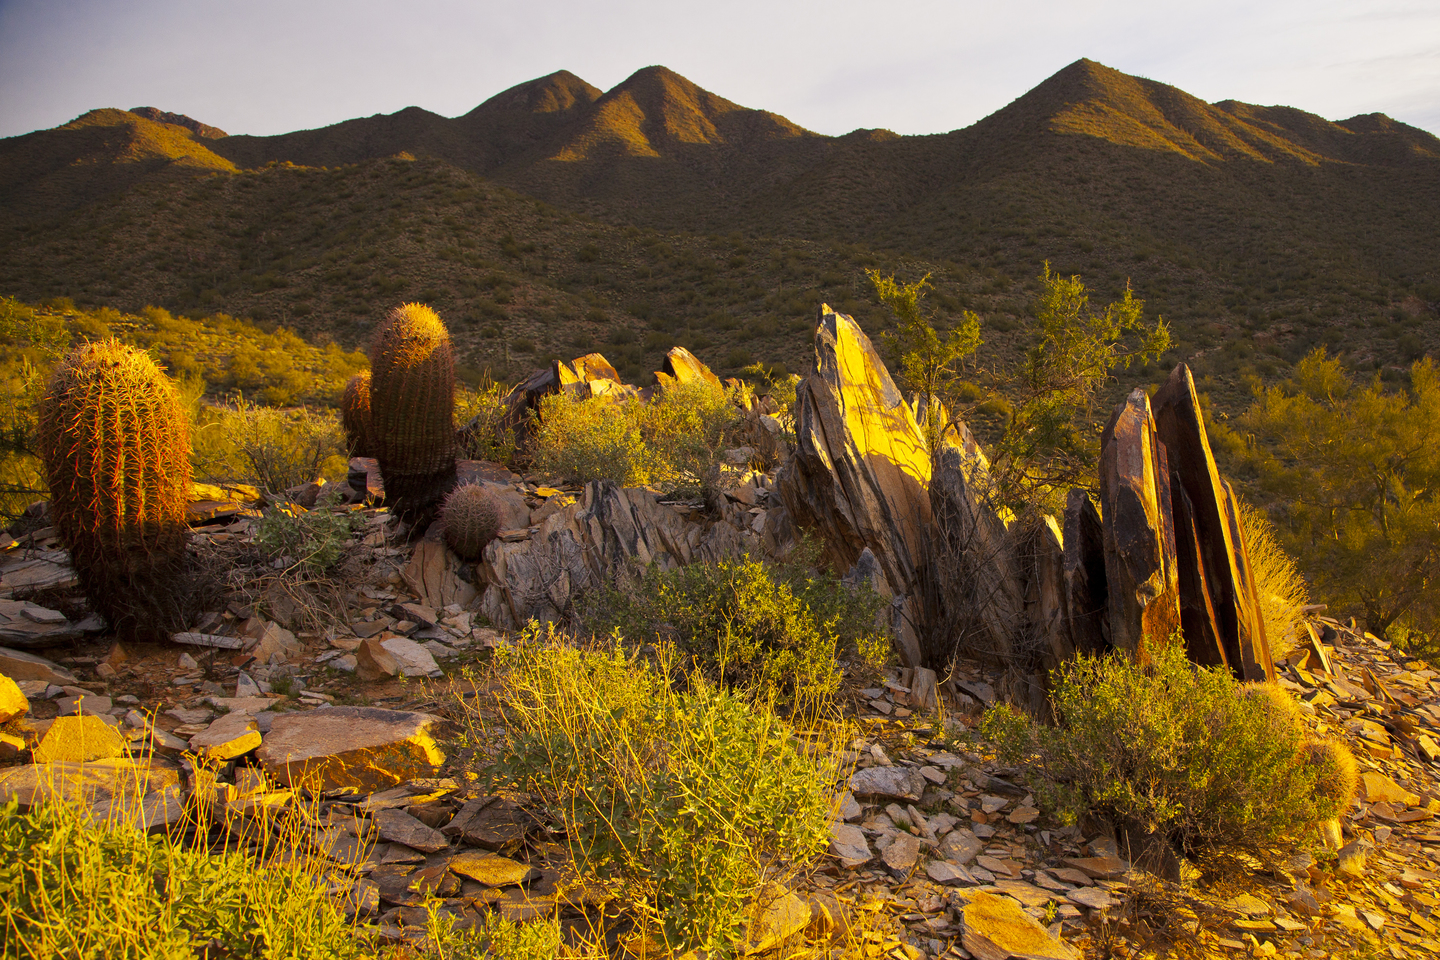 Morning light on rocks in the desert